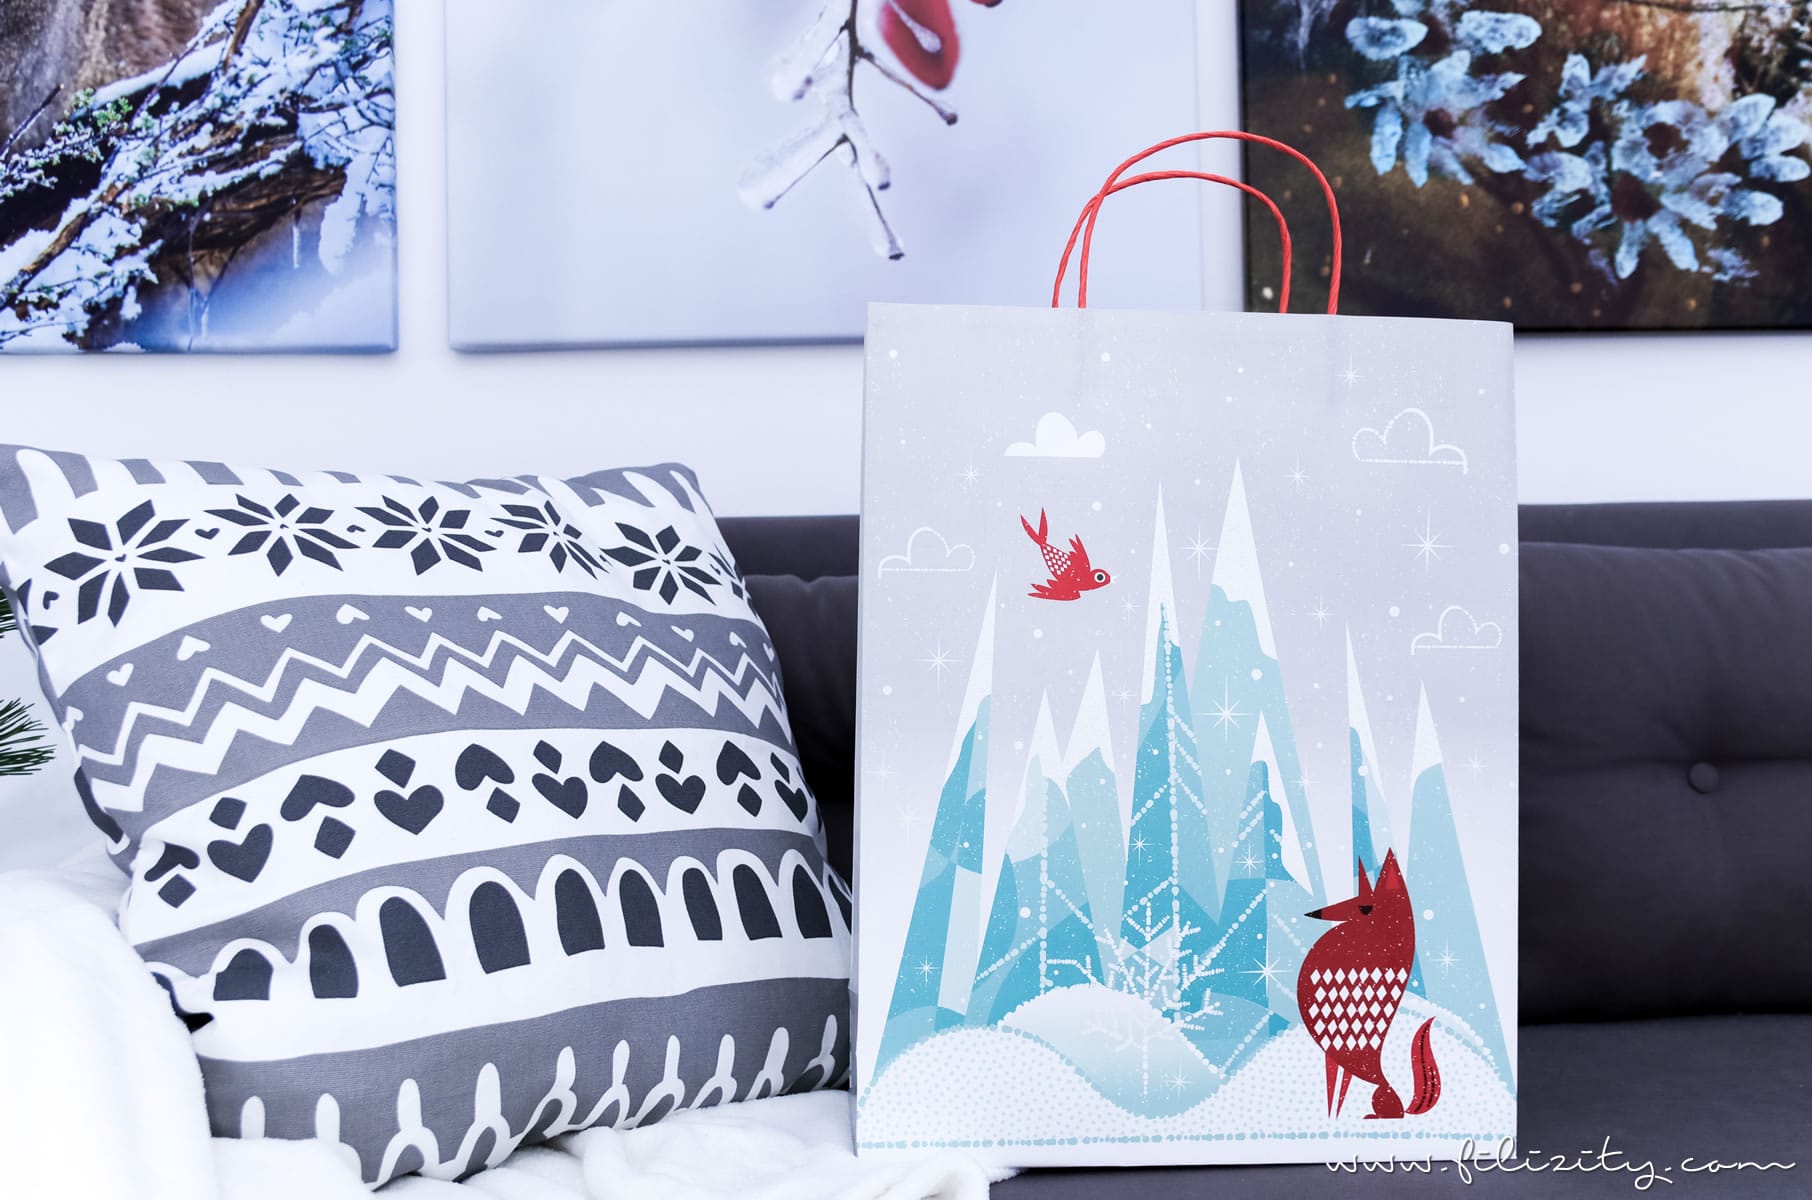 Vinter 2017: Winter- und Weihnachtsdeko von IKEA + DIY Dekokissen | Filizity.com | Interior-Blog aus dem Rheinland #vinter2017 #ikea #weihnachten